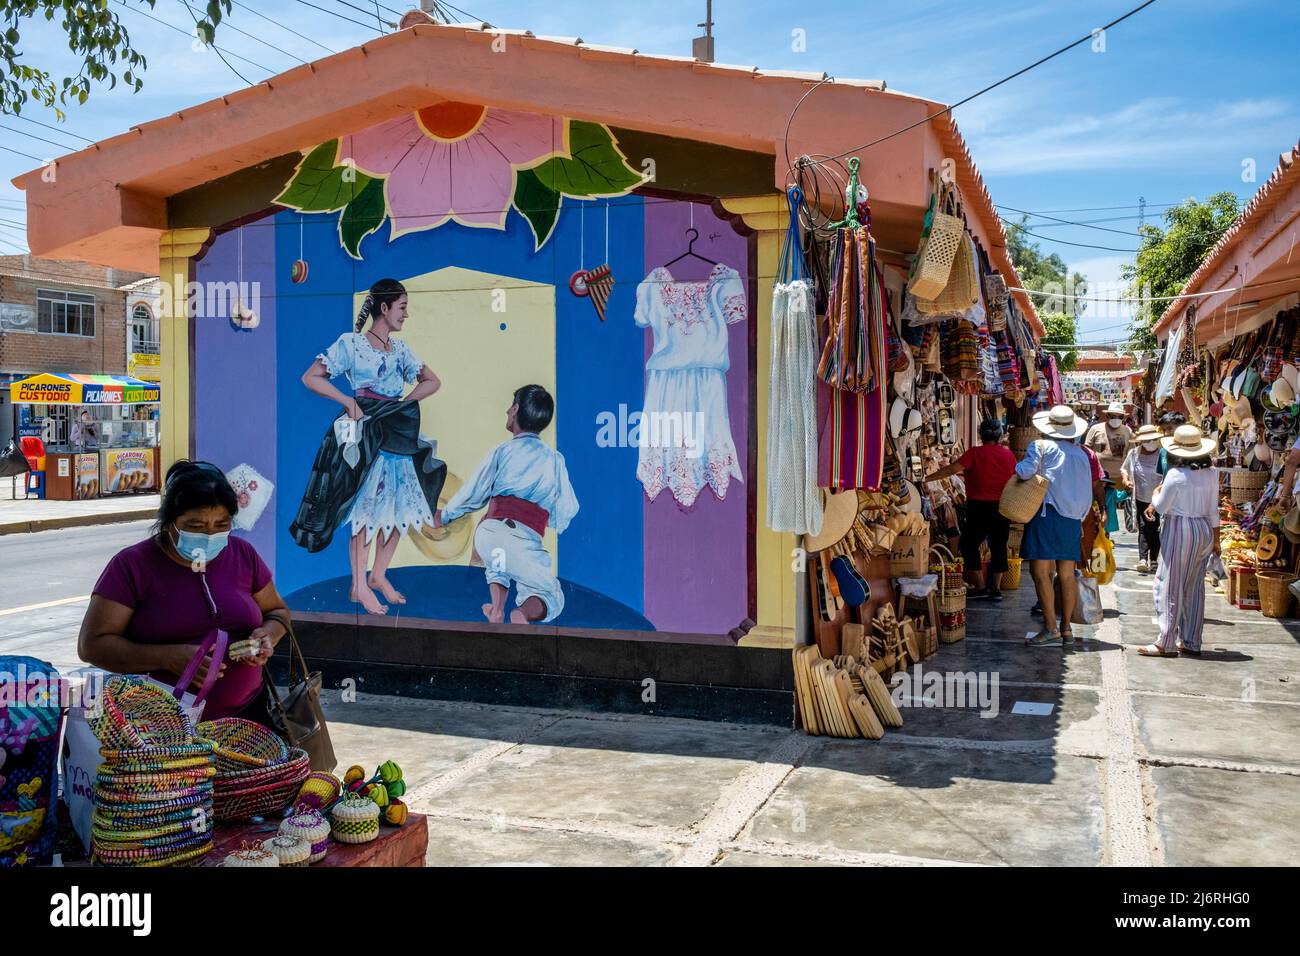 Colourful Shops At The Monsefu Craft Market near Chiclayo, Lambayeque Region, Peru. Stock Photo